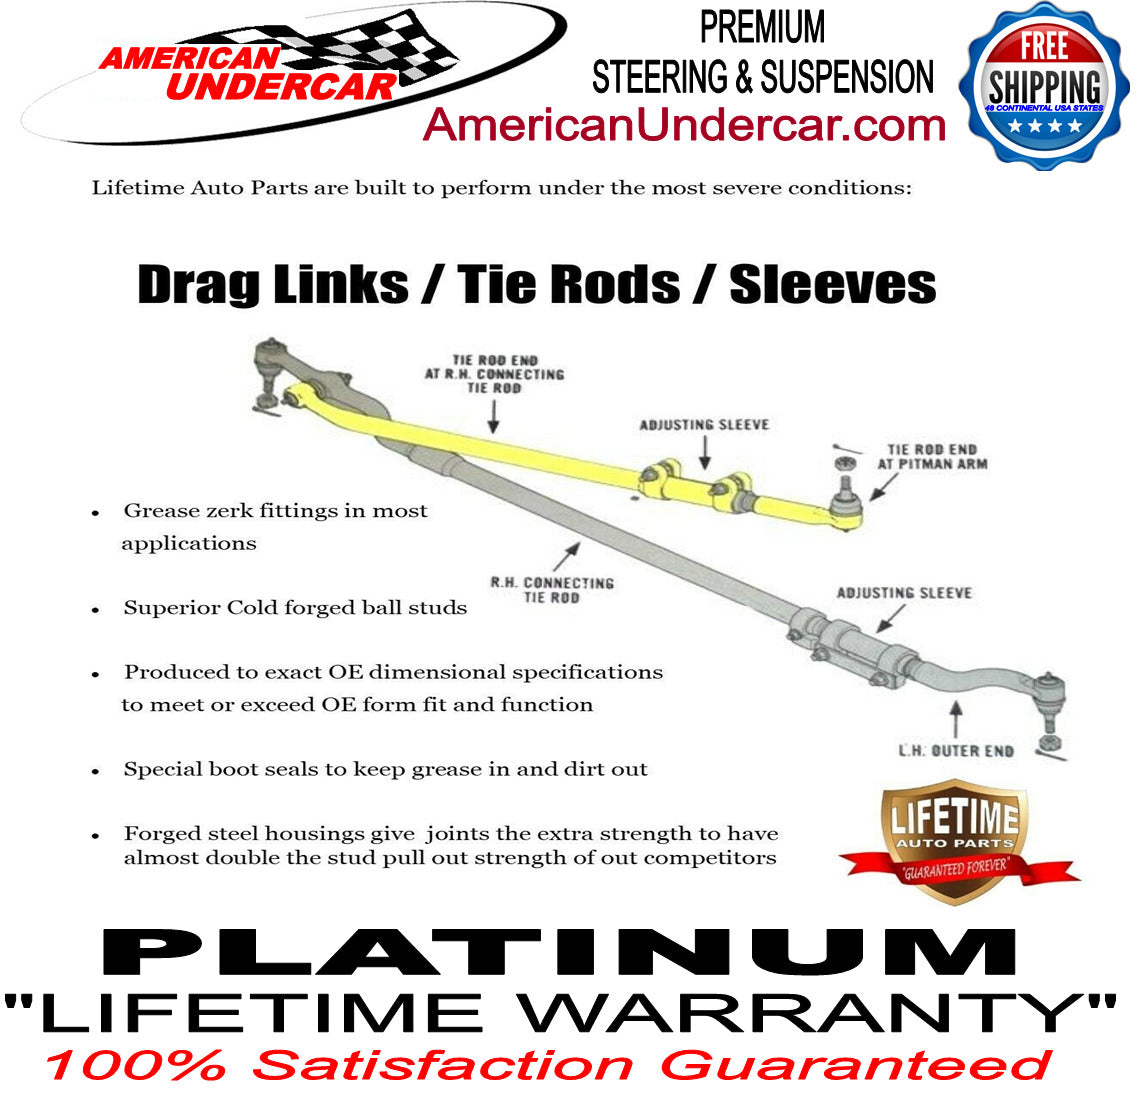 Lifetime New T Steering Design Upgrade Kit for 2003-2013 Dodge Ram 2500, 3500 4x4